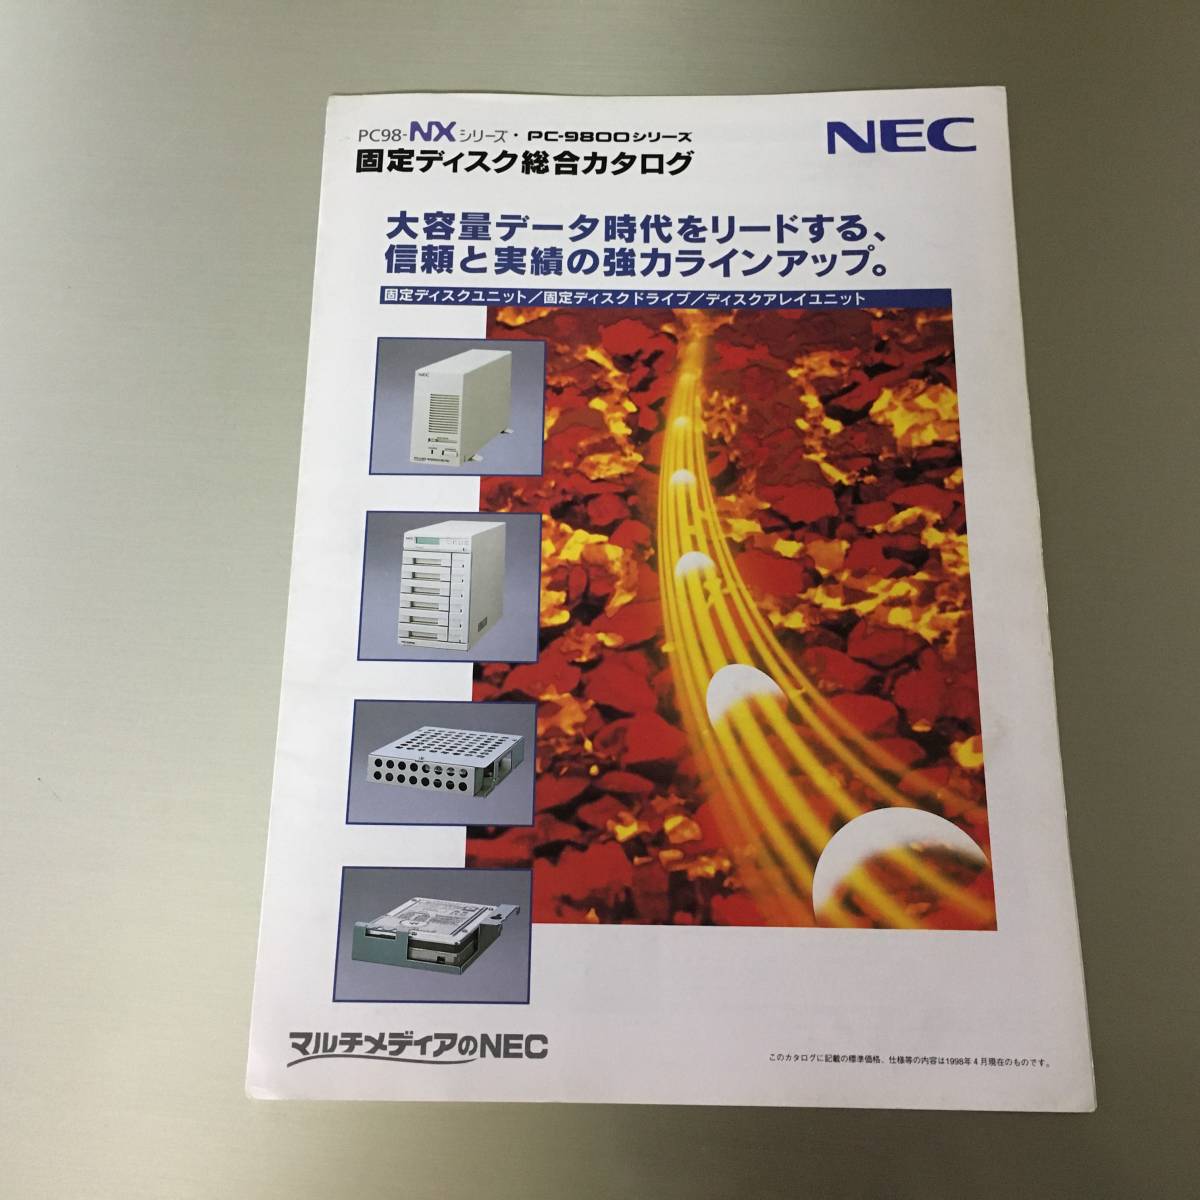 カタログ NEC PC98-NXシリーズ・PC-9800シリーズ 固定ディスク総合カタログ PC-DA12_画像1